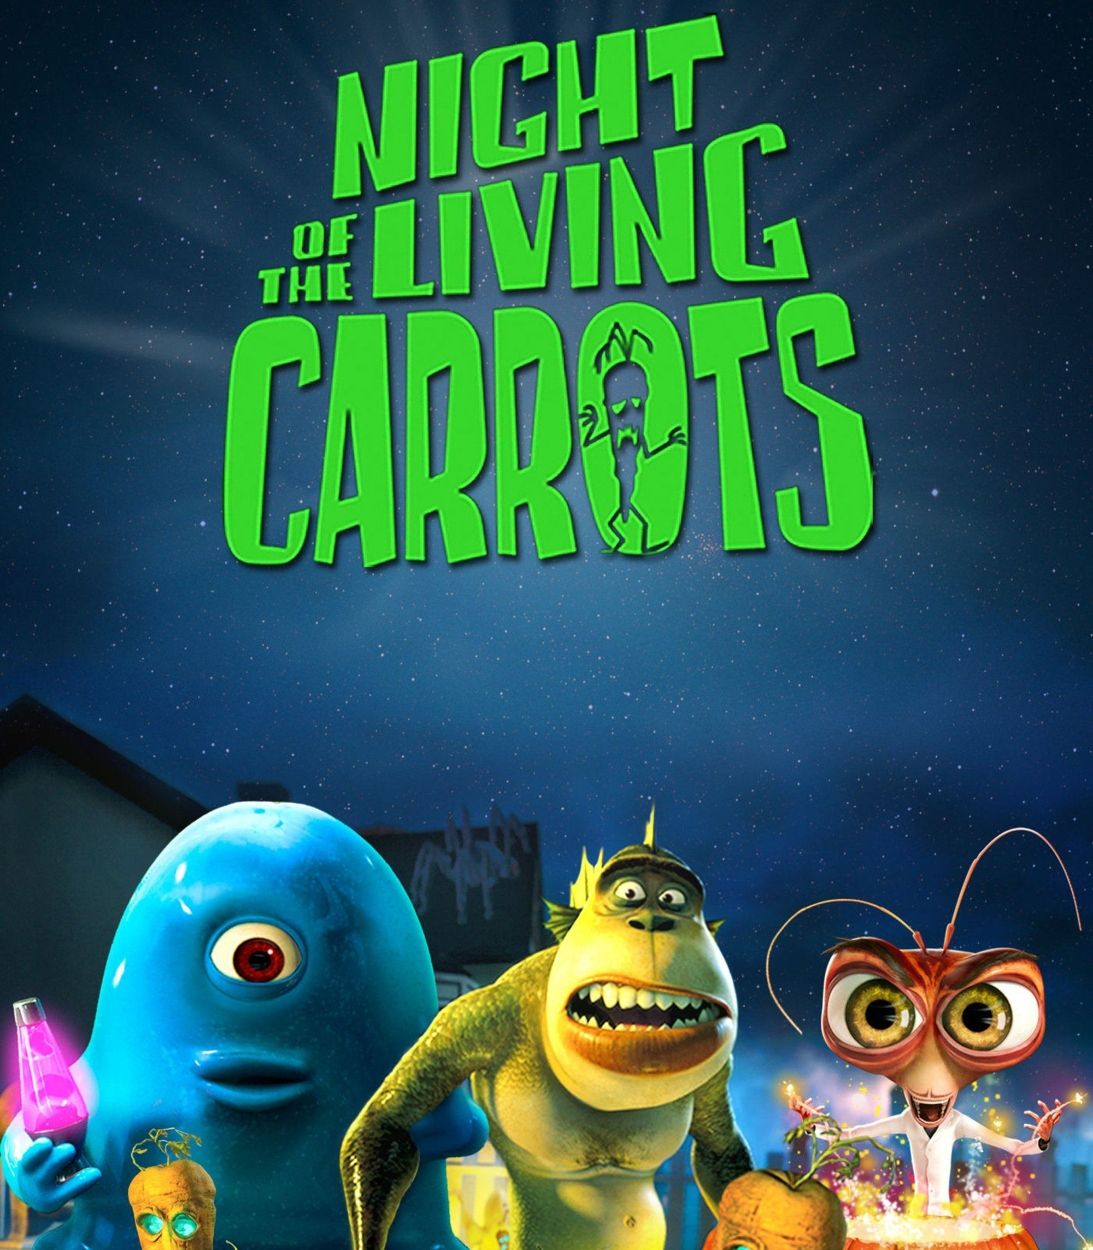 monsters vs aliens night of living carrots TLDR vertical